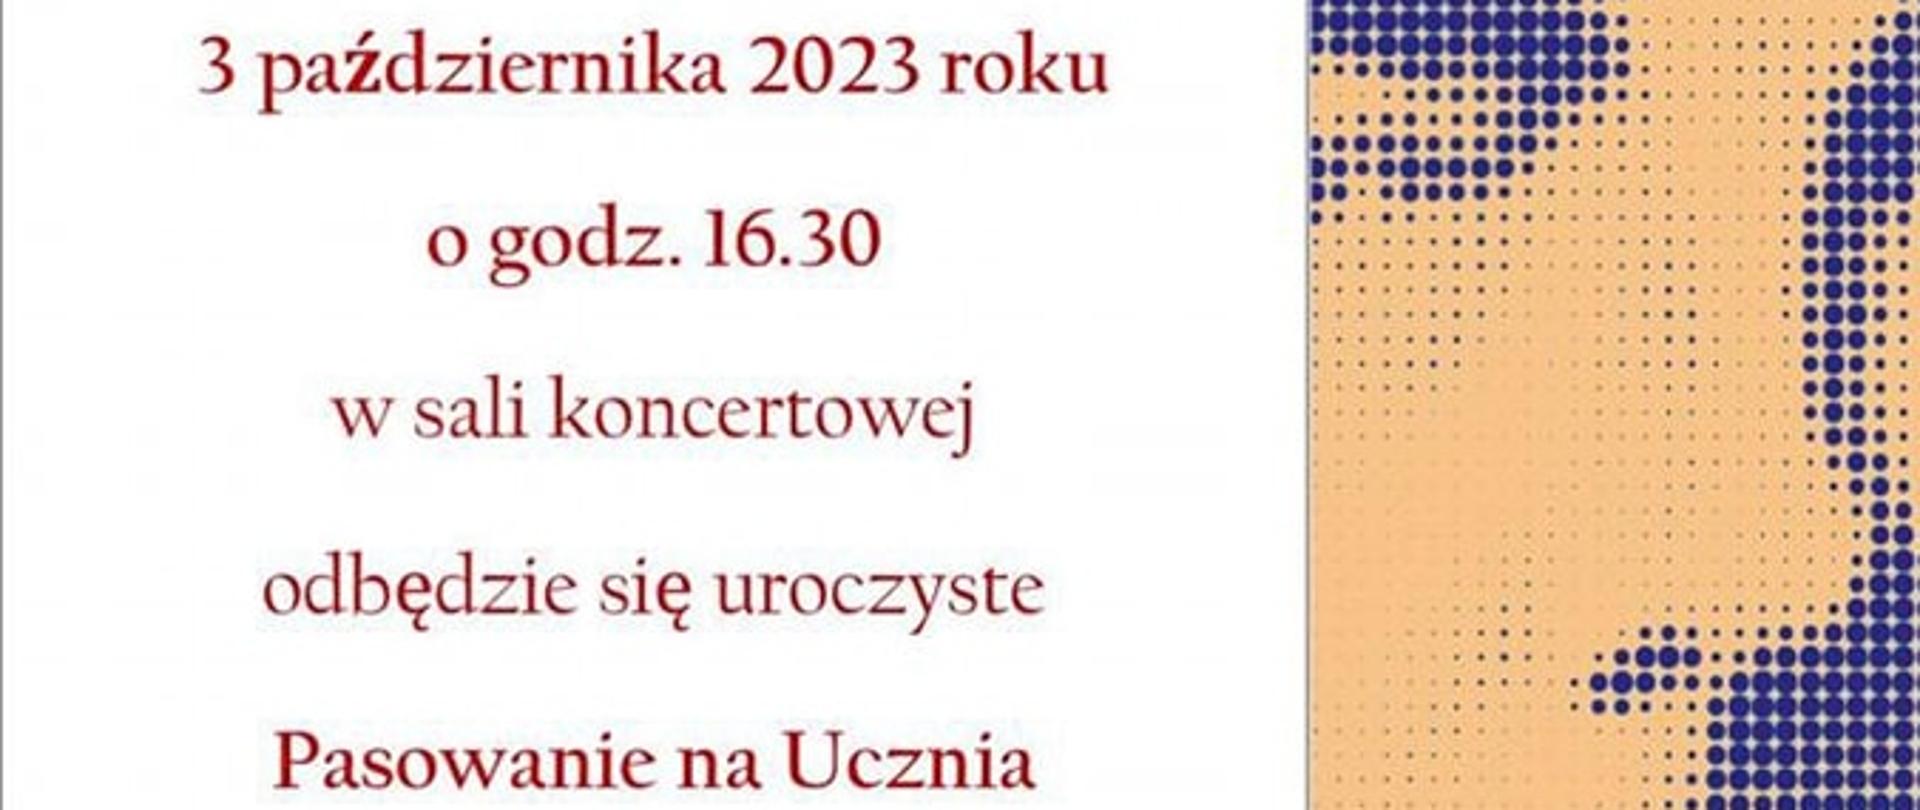 Afisz z wizerunkiem Karola Szymanowskiego zawierający zaproszenie na pasowanie na ucznia, które będzie miało miejsce 3 października 2023 roku o godzinie 16:30 w sali koncertowej.